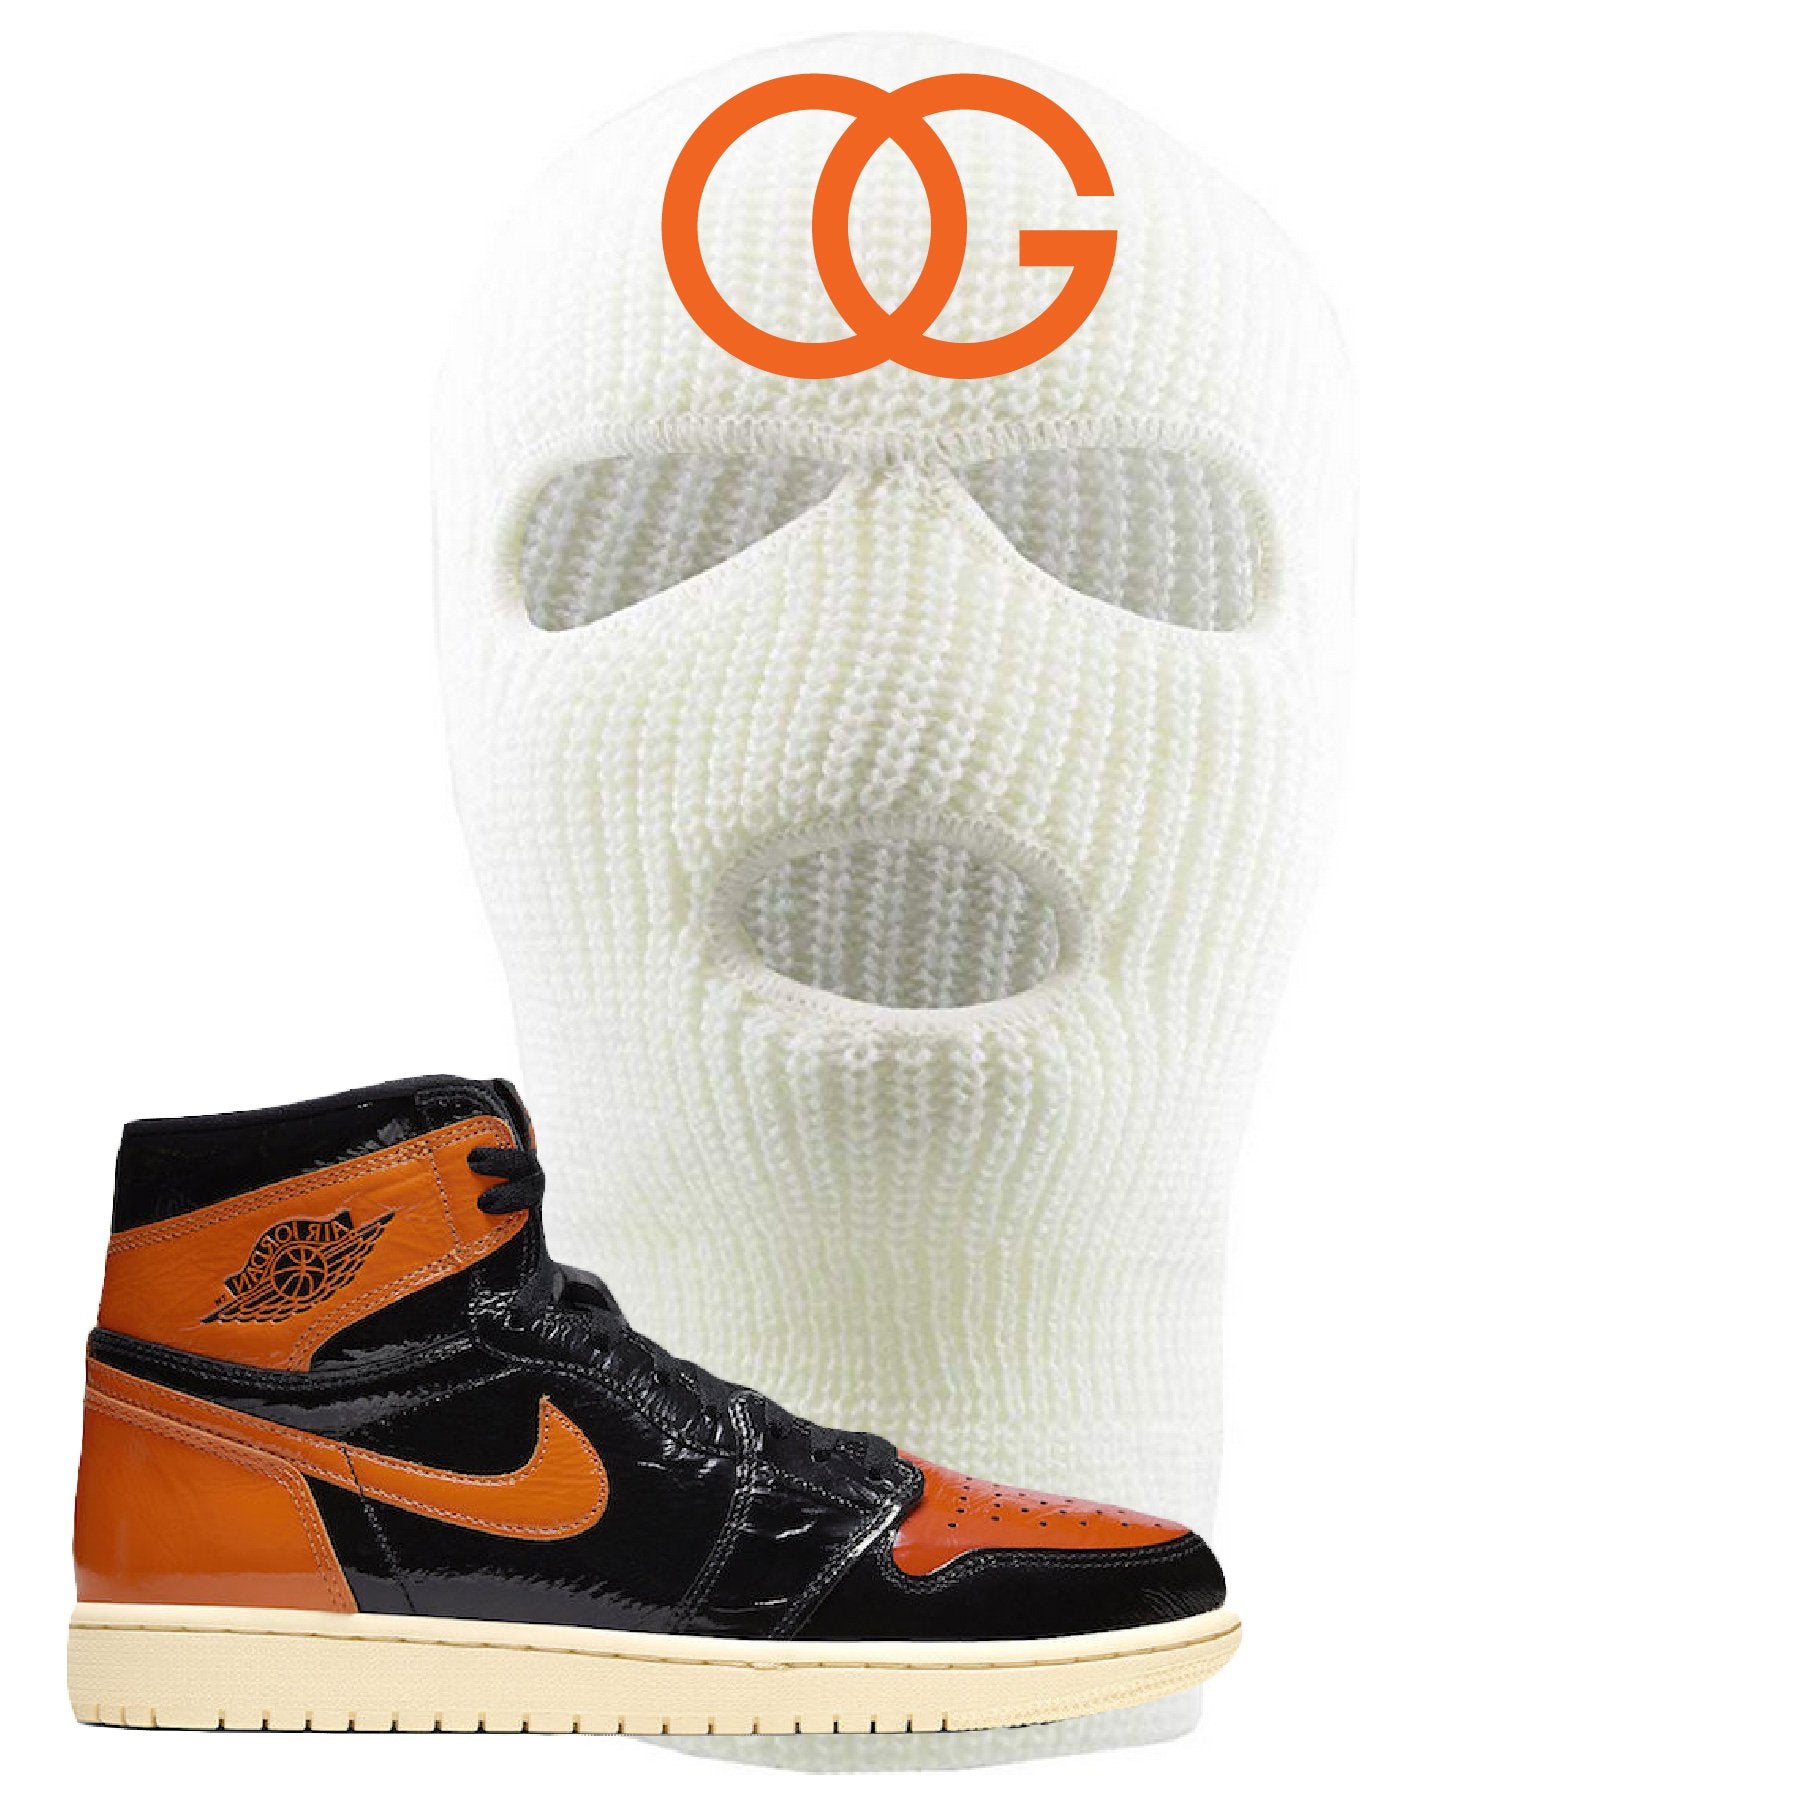 Jordan 1 Shattered Backboard OG White Sneaker Hook Up Ski Mask